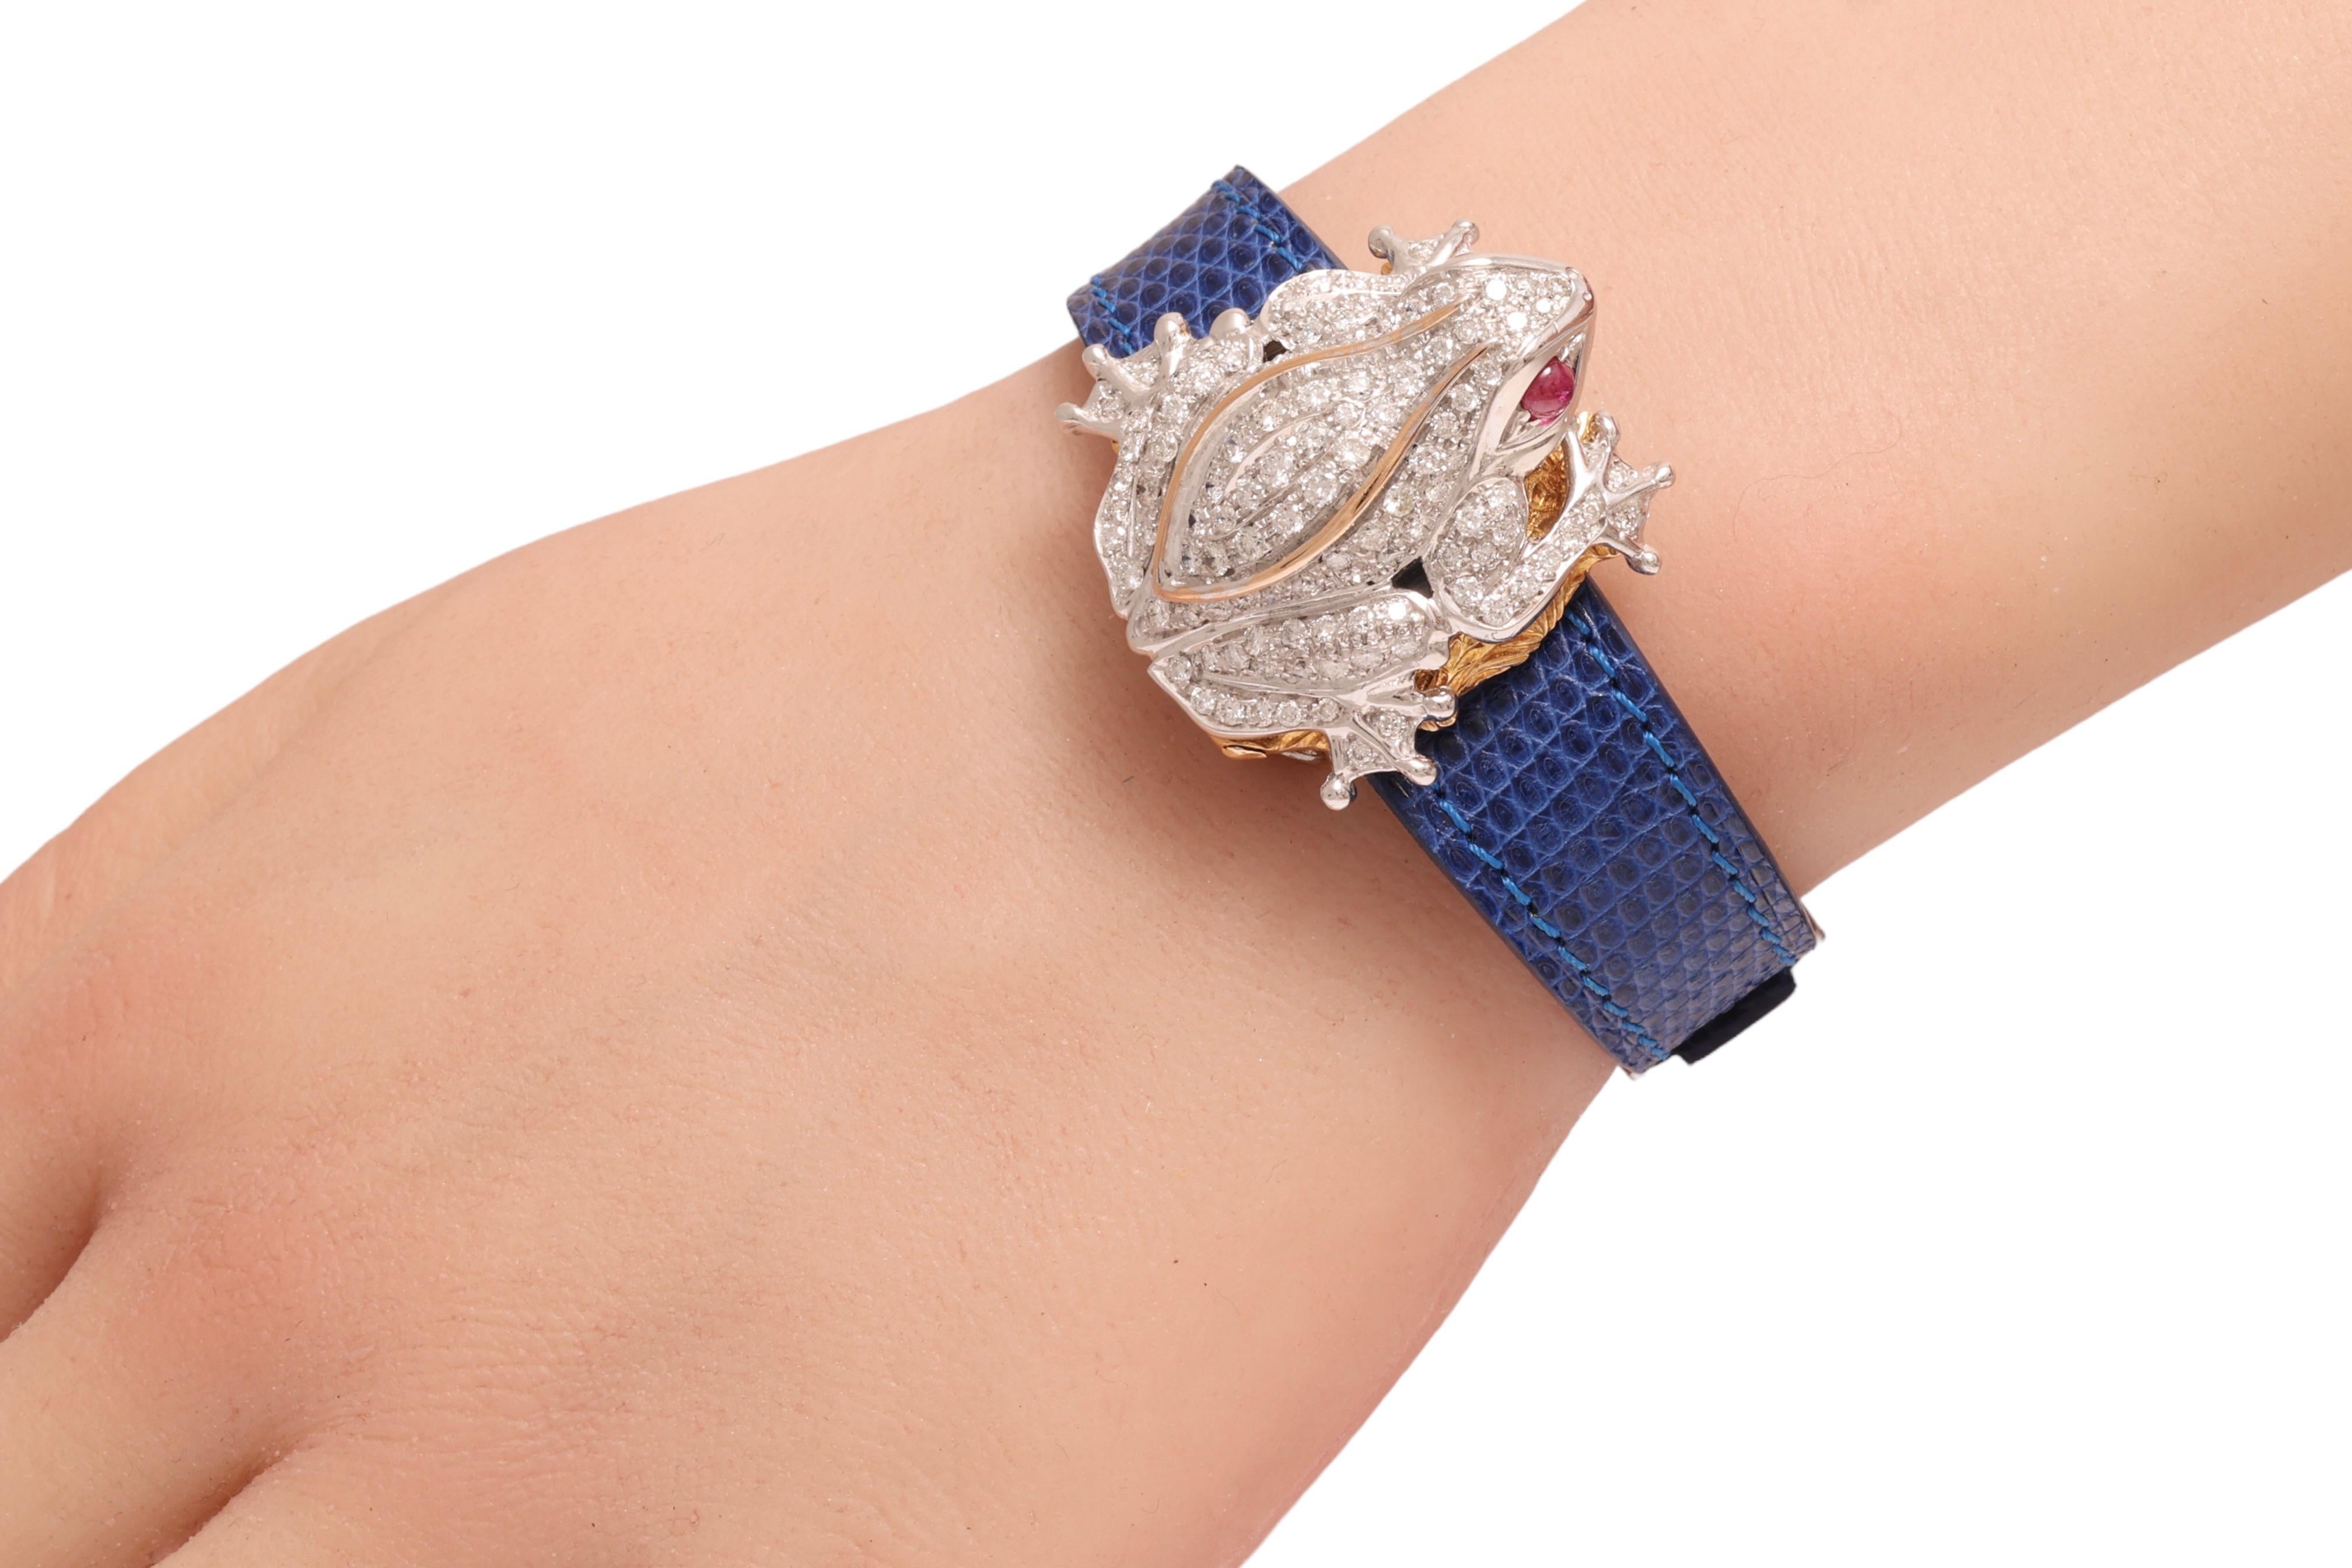 Zannetti Rana Scrigno Jewel Frog Wrist Watch / Bracelet, Diamonds & Ruby's For Sale 3